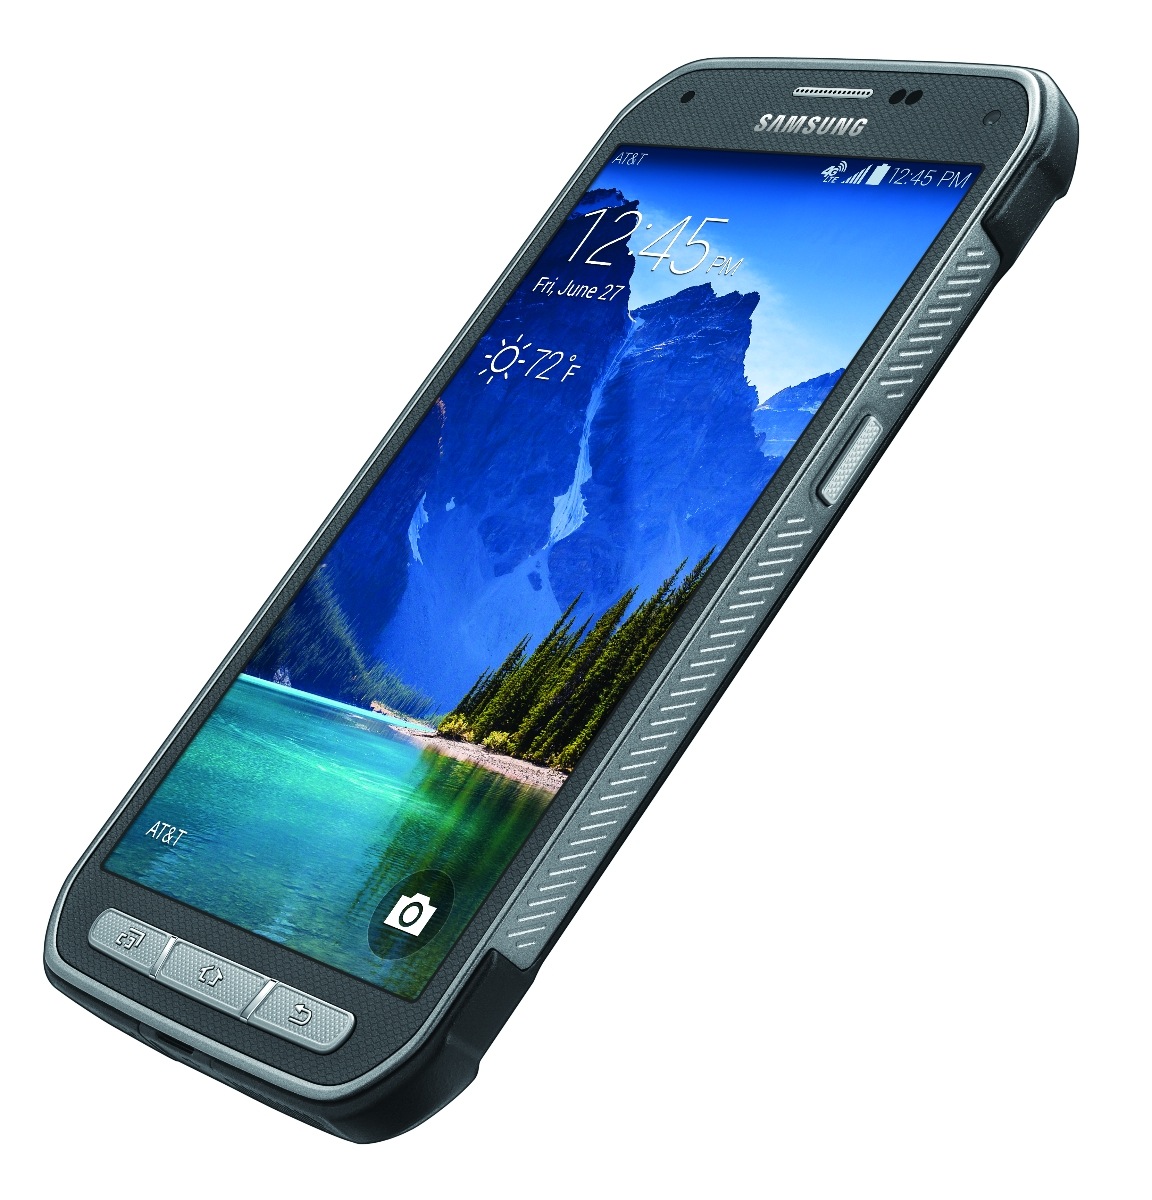 Samsung Galaxy S6 Active podría incluir memoria expandible